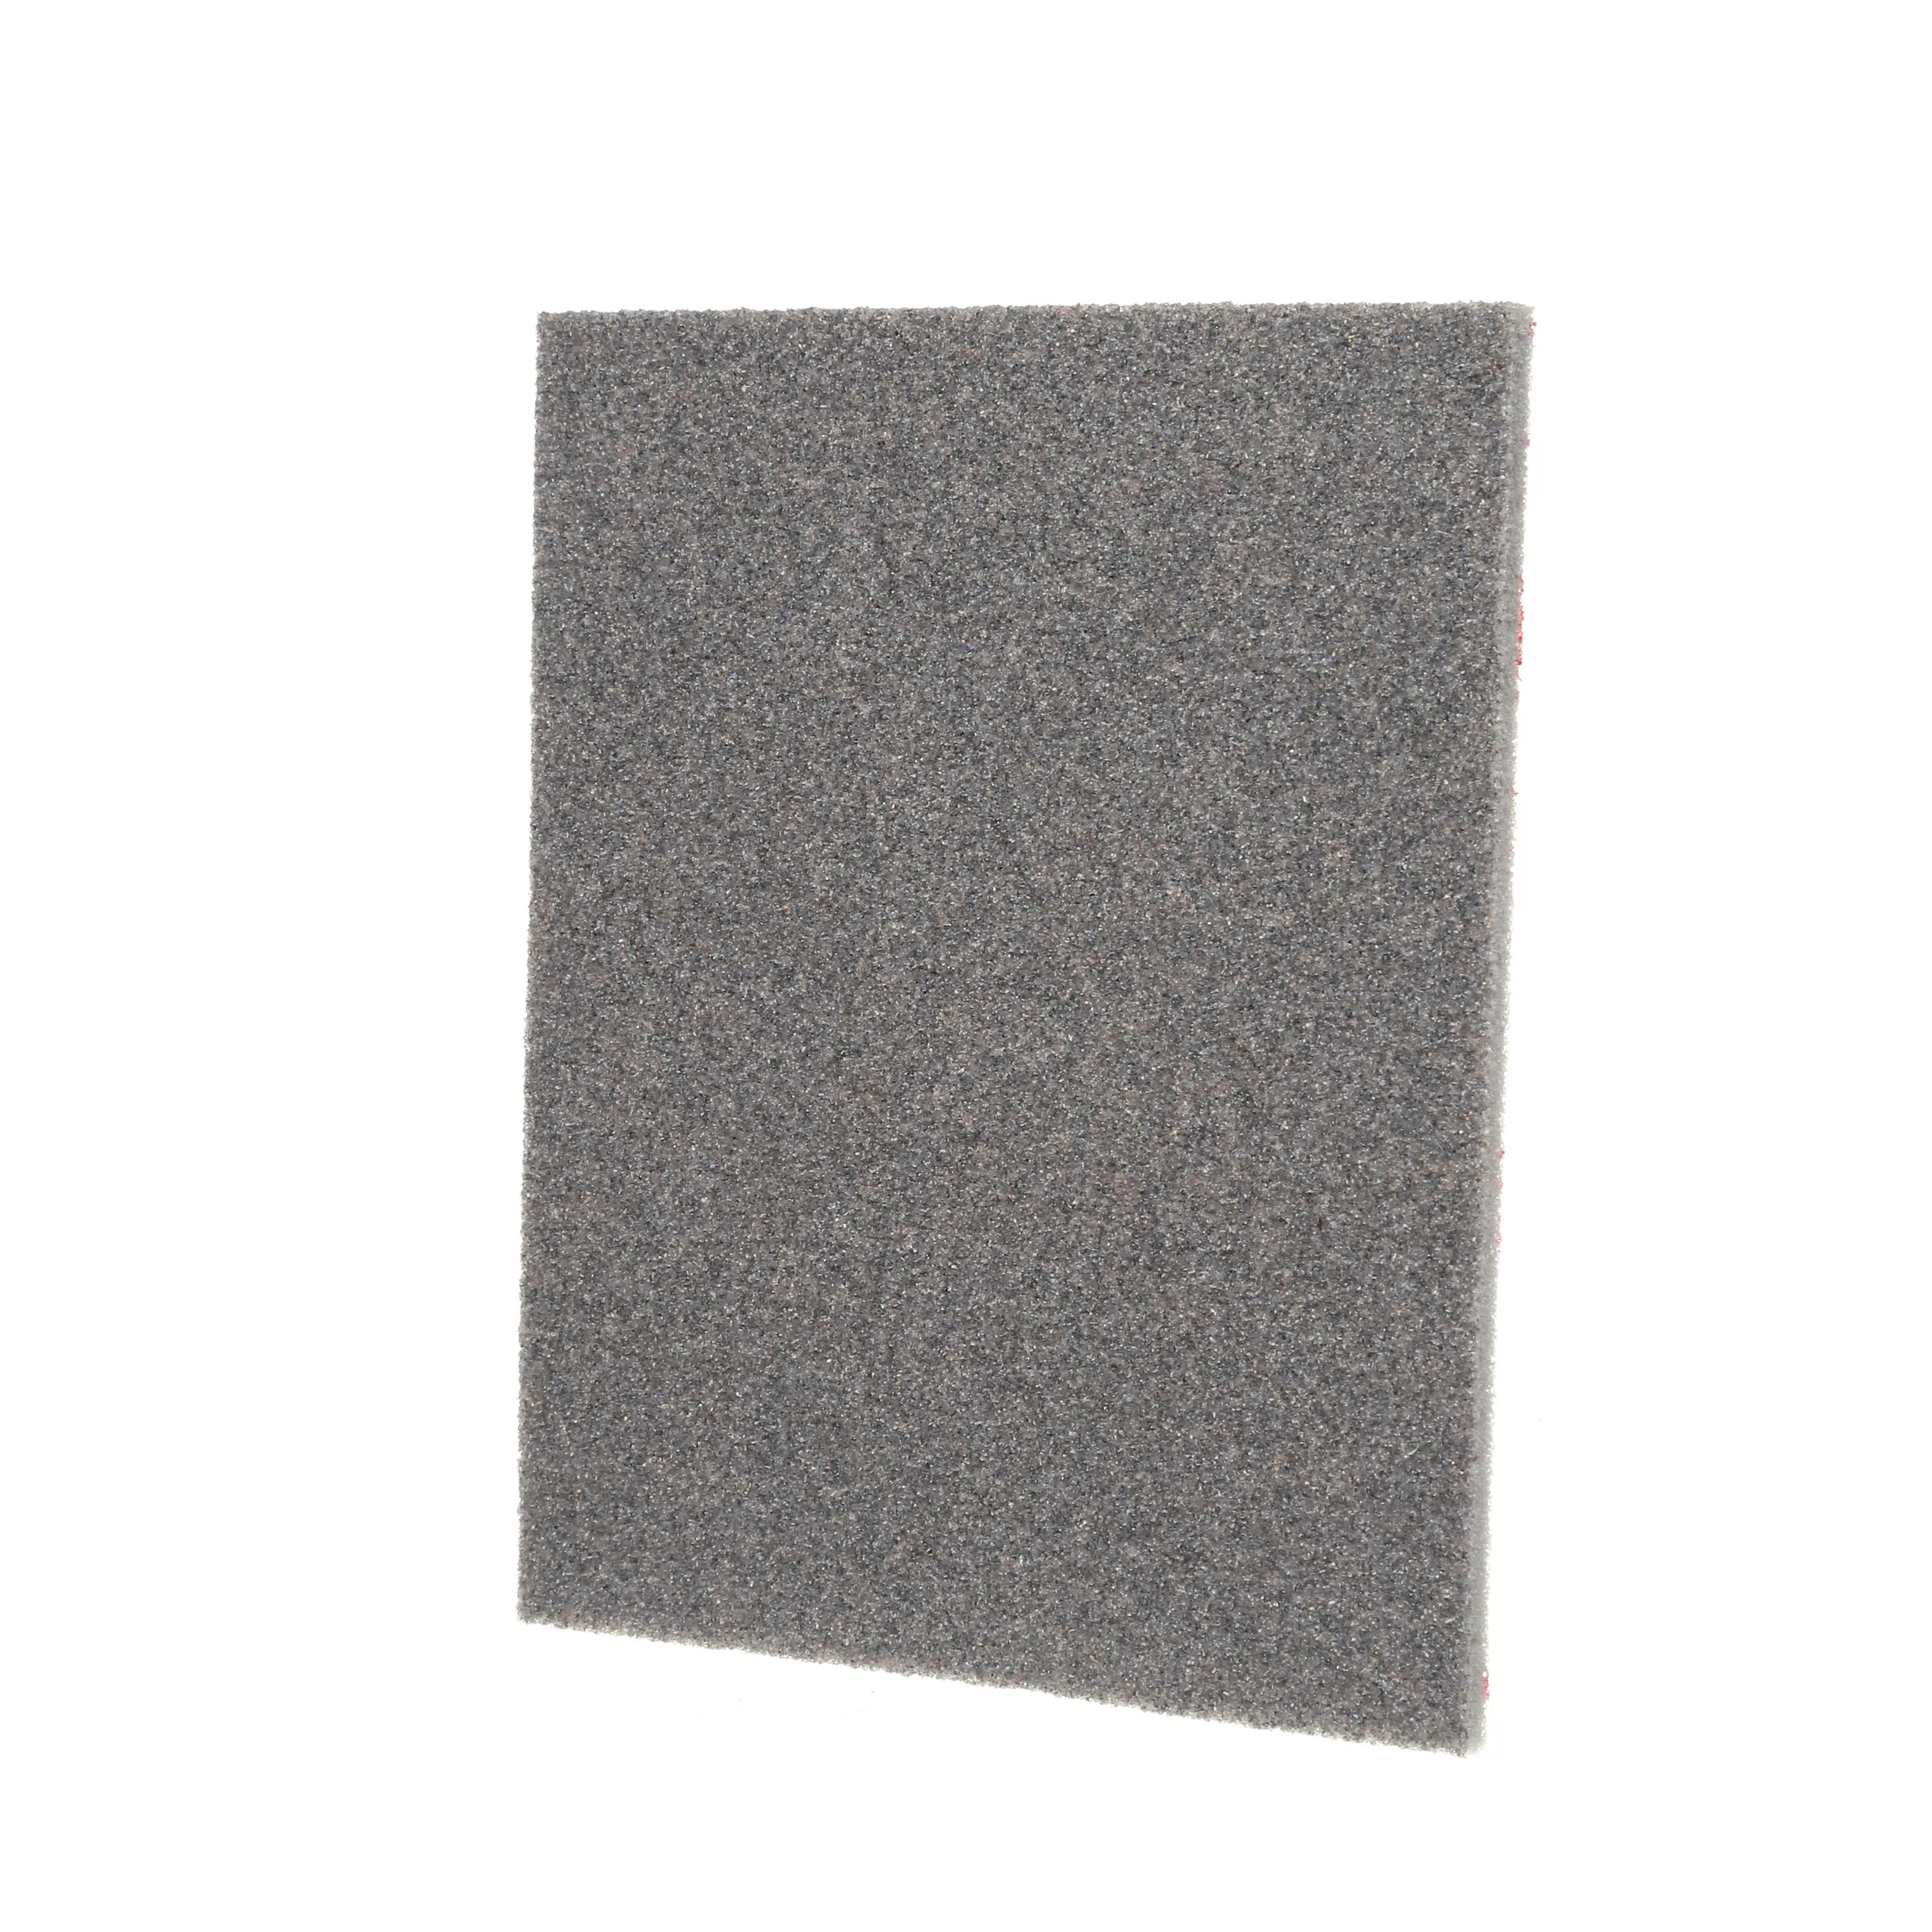 Product Number 06966 | 3M™ Contour Surface Sanding Sponge 06966